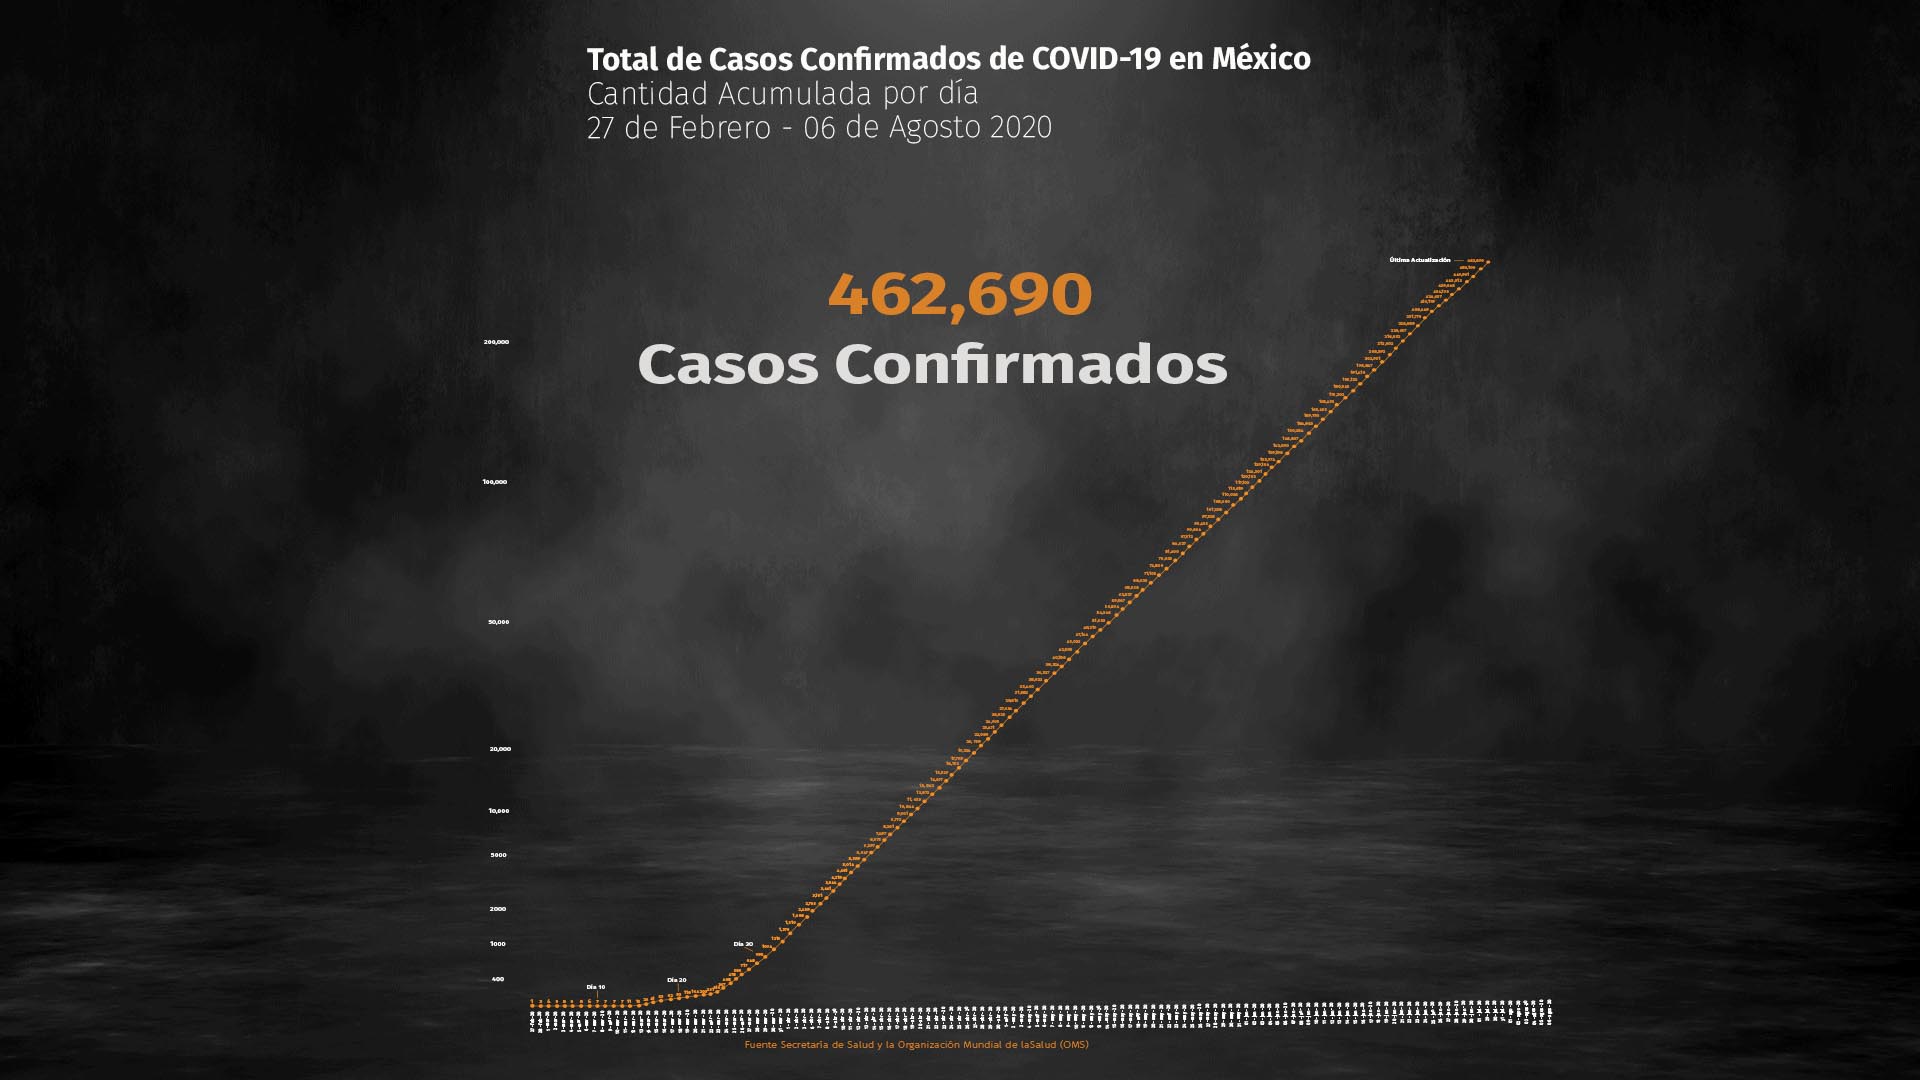 La Coparmex lamentó la gran pérdida que México enfrenta a causa de la crisis sanitaria y también señaló que quizá con otro tipo de acciones se pudieron evitar tantas muertes (Foto: Steve Allen)